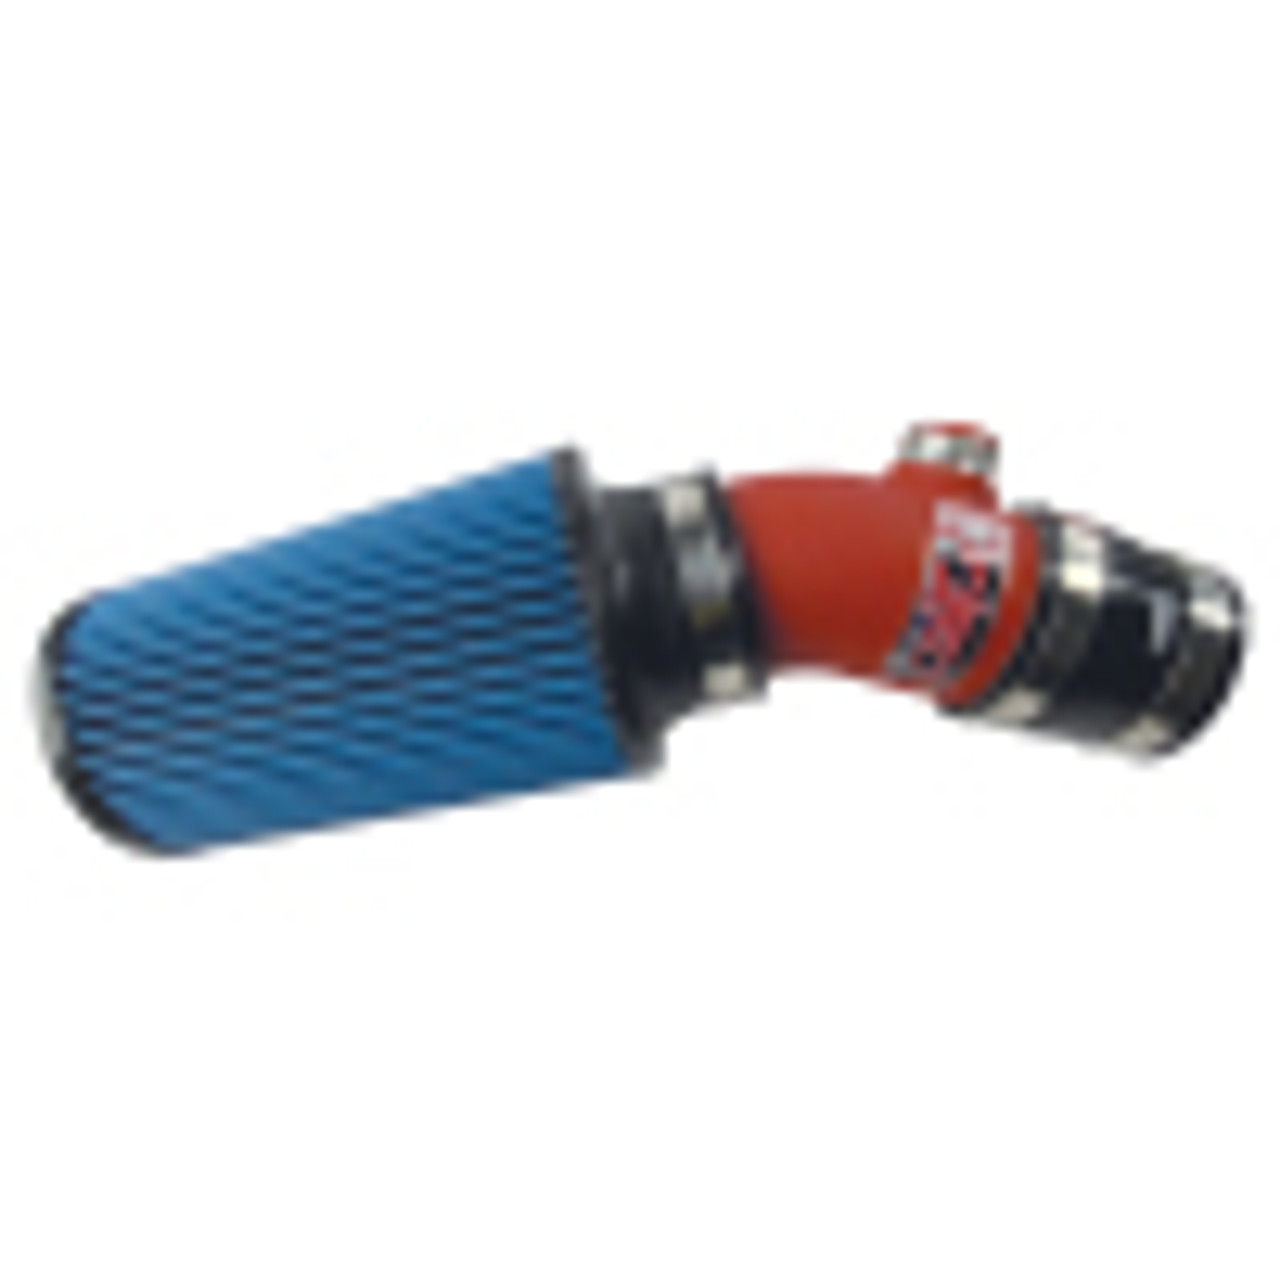 Short Ram Air Intake System
Intake Color: Wrinkle Red.  Filter Color: Blue